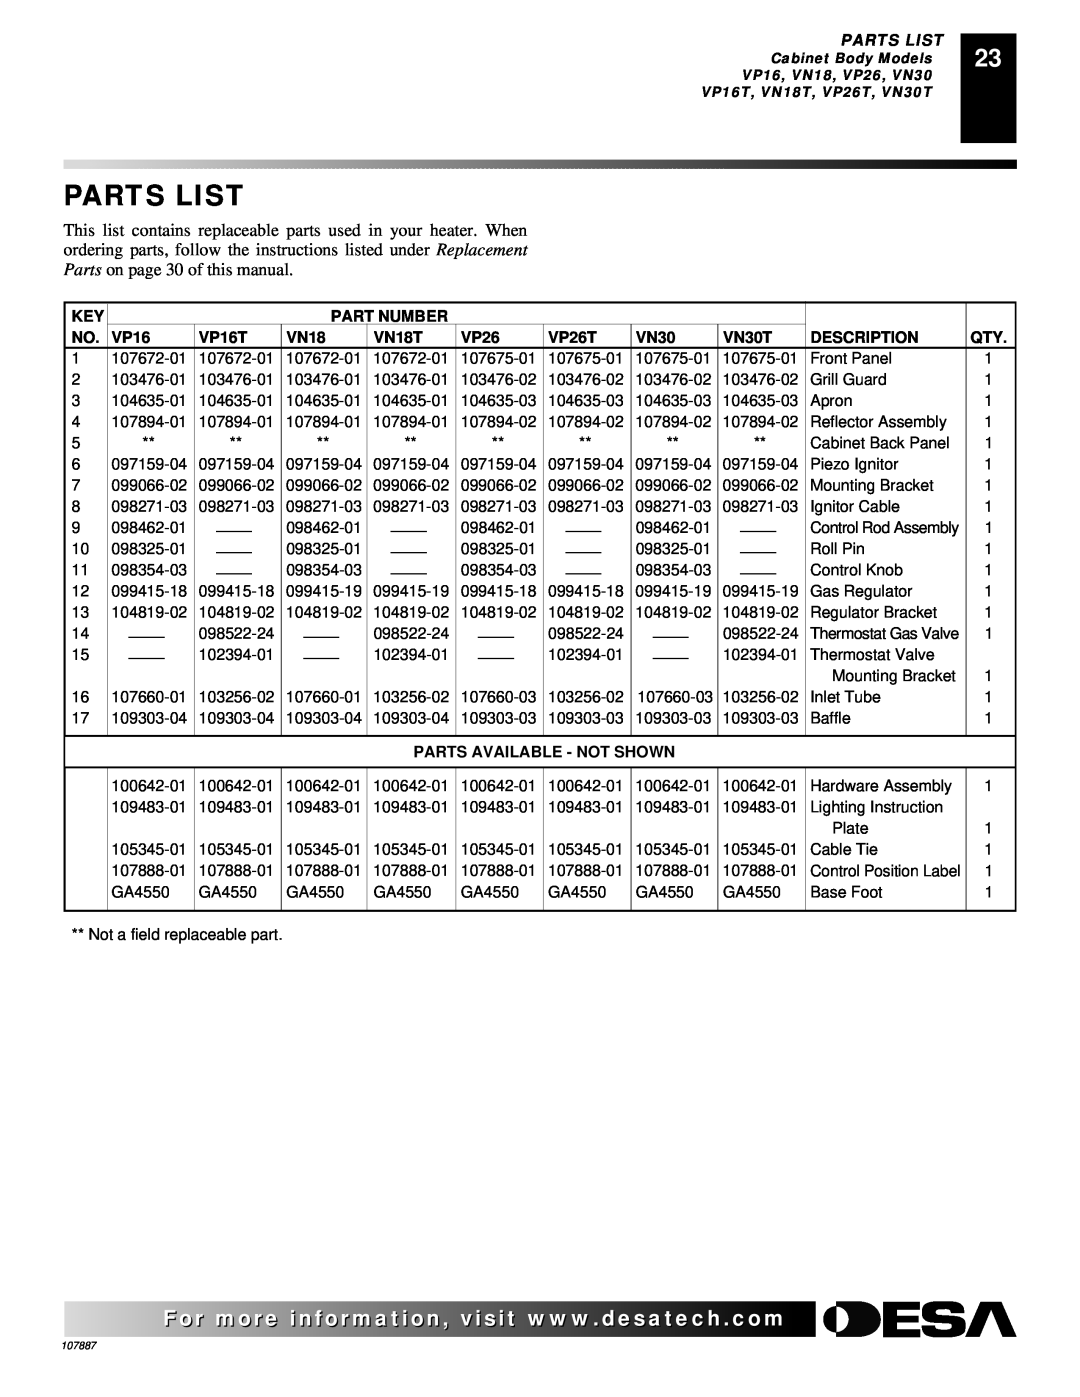 Vanguard Heating VN25IT, VP22IT, VN18IT Parts List, Part Number, VP16T, VN18T, VP26T, VN30T, Description 